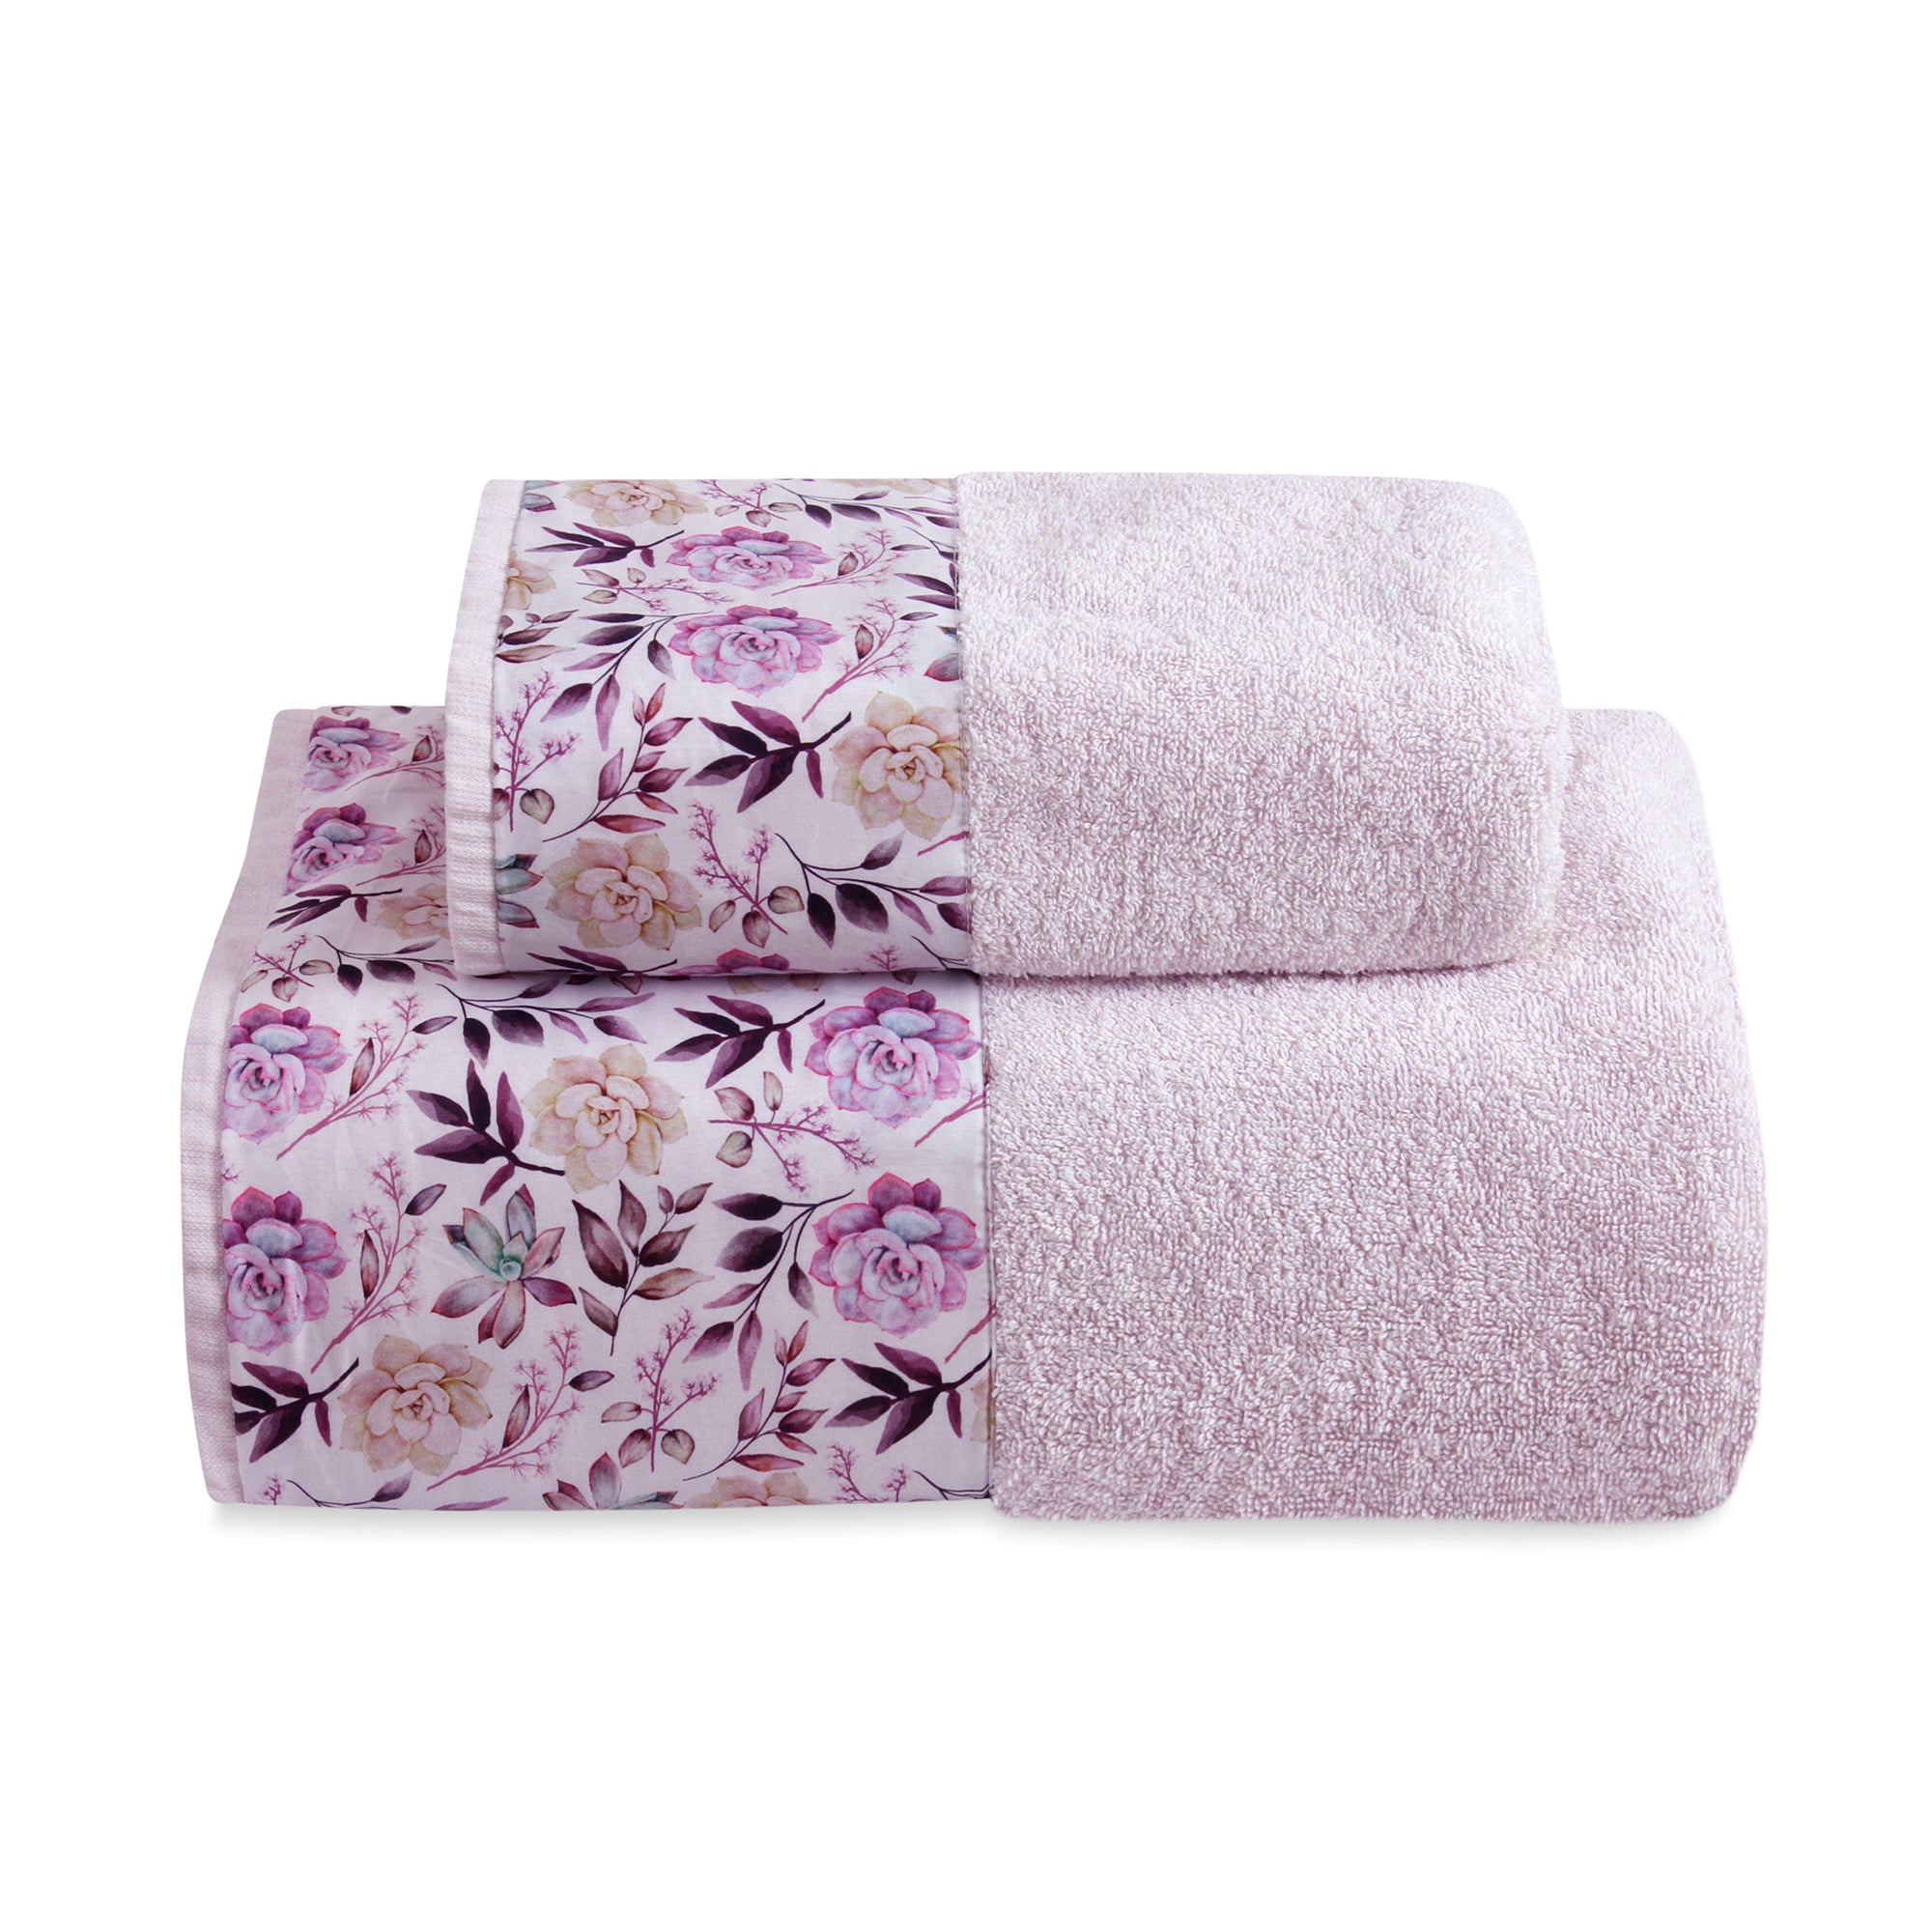 Lilac Roses Bath Towel Set